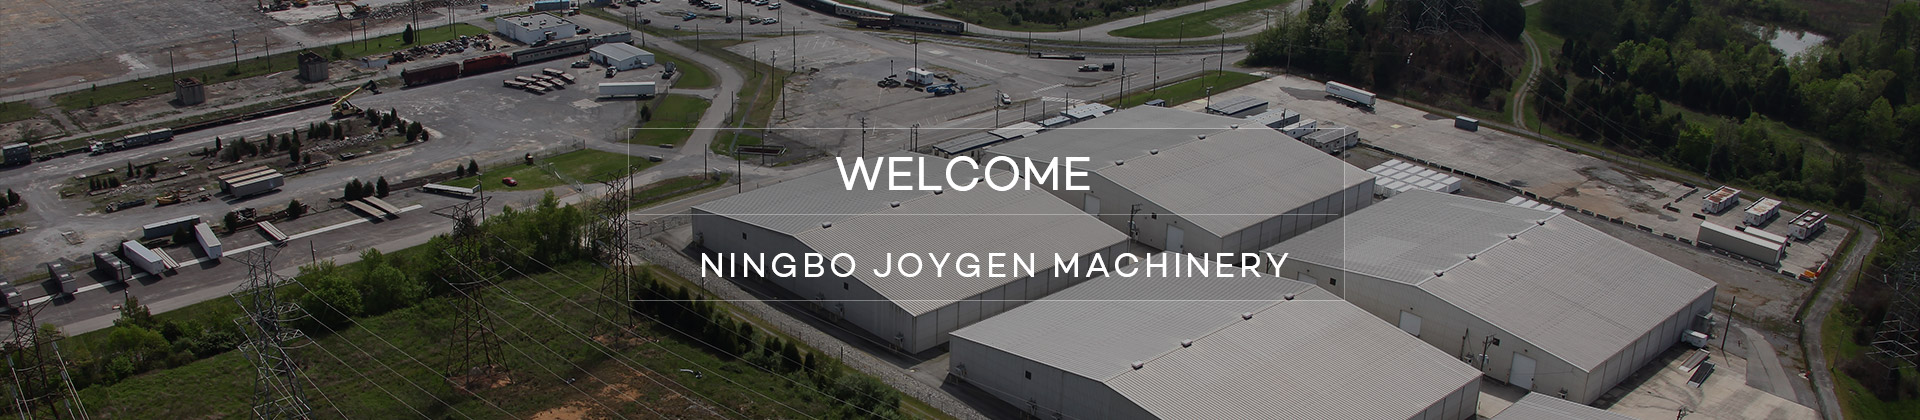 WELCOME NINGBO JOYGEN MACHINERY